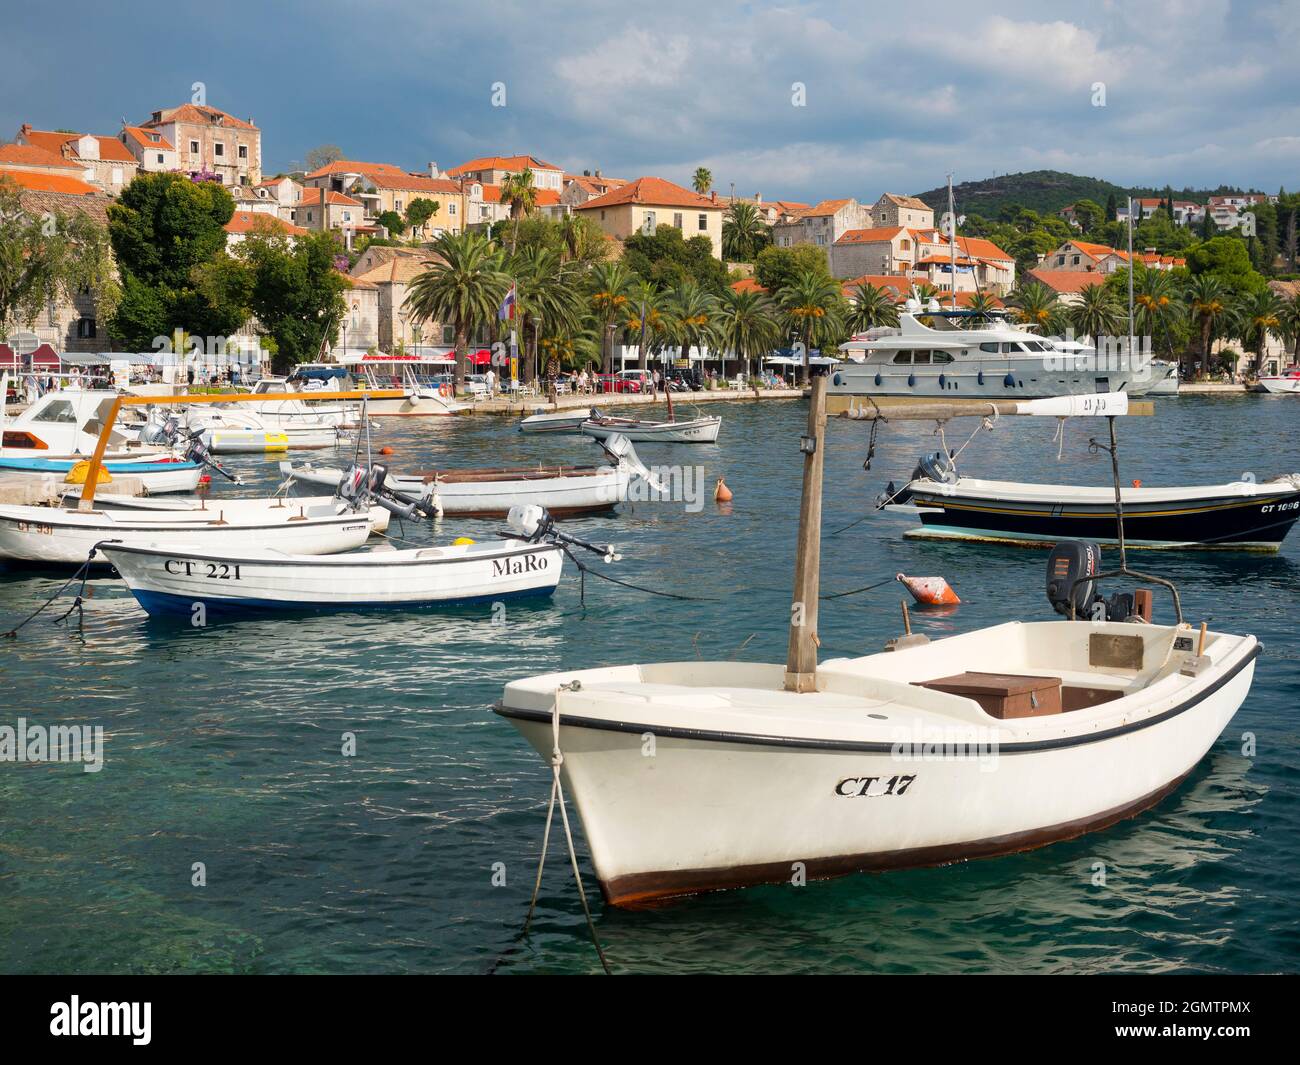 Cavtat est une petite ville de bord de mer dans le comté de Dubrovnik-Neretva en Croatie. Il est situé sur la côte de la mer Adriatique à 15 kilomètres au sud de Dubrovnik. L'origi Banque D'Images